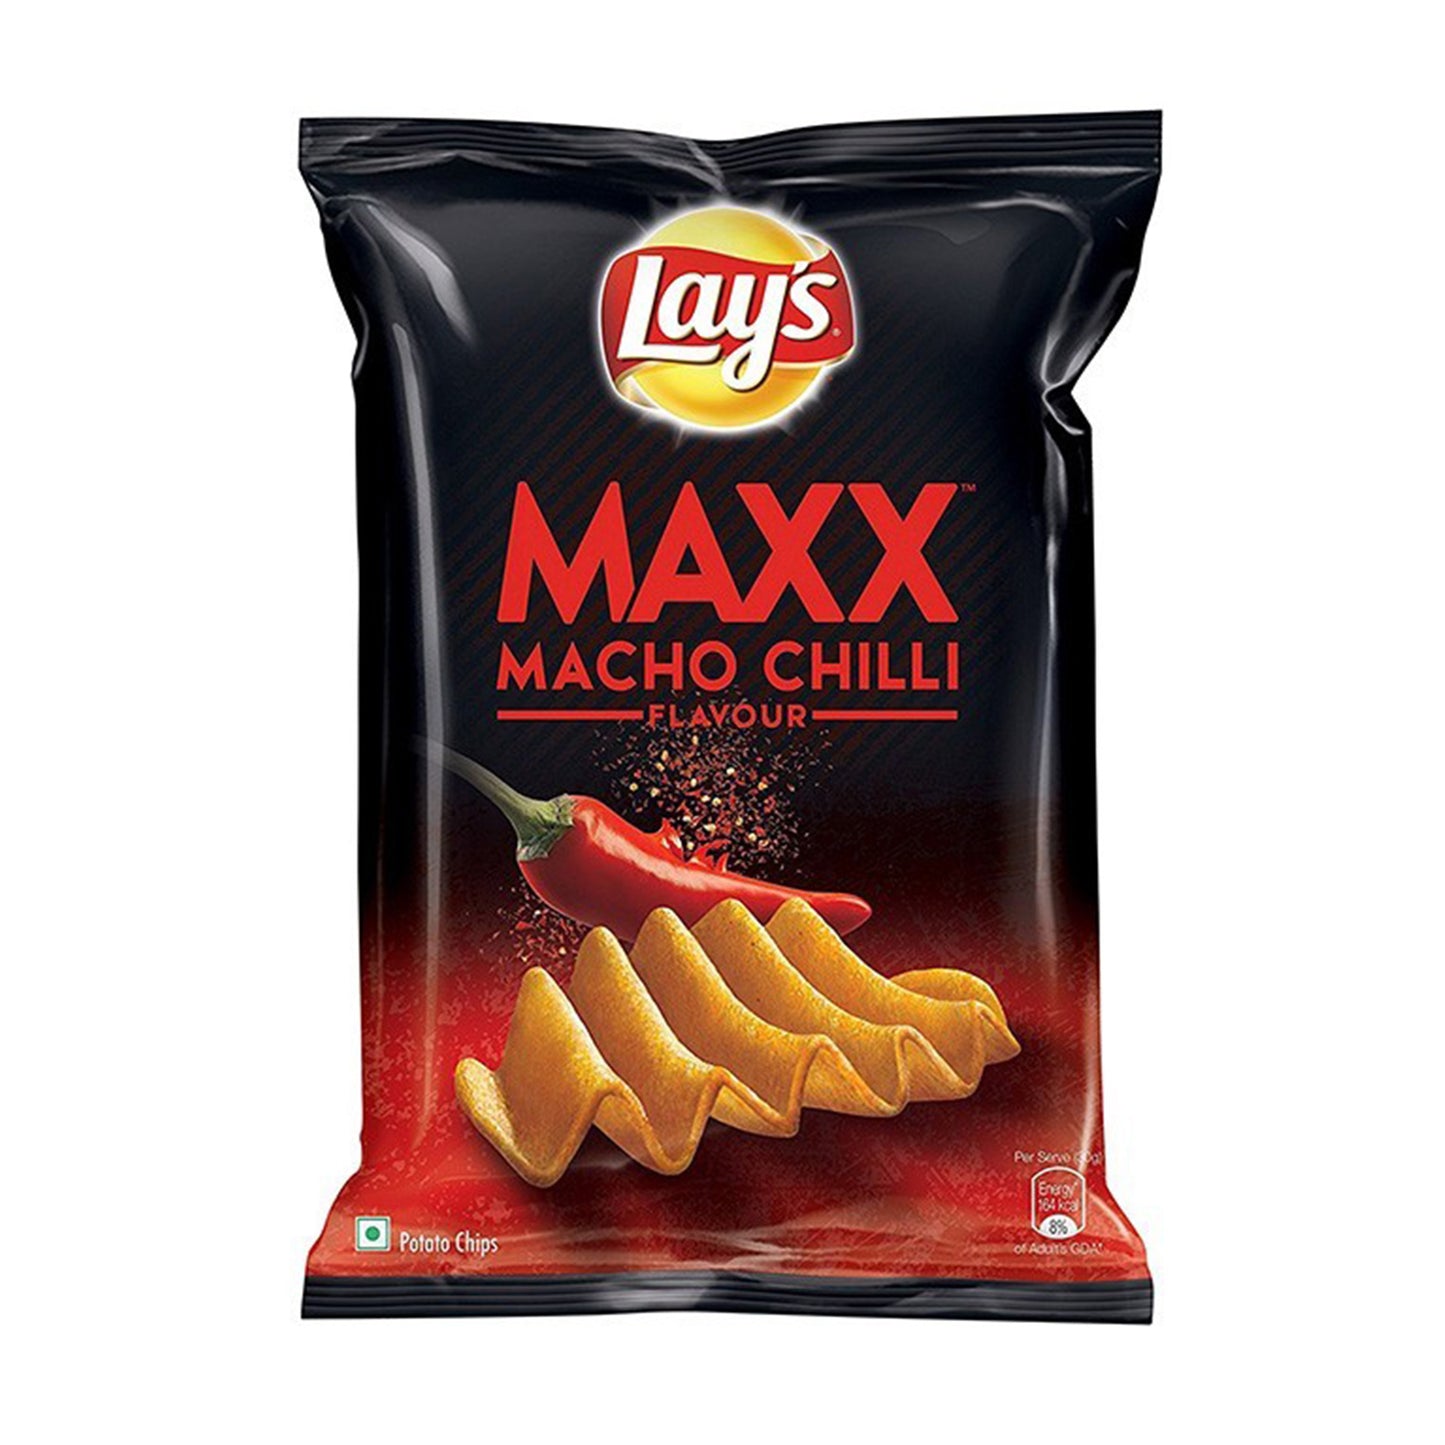 Lay's Maxx Macho Chilli Flavour (56g)